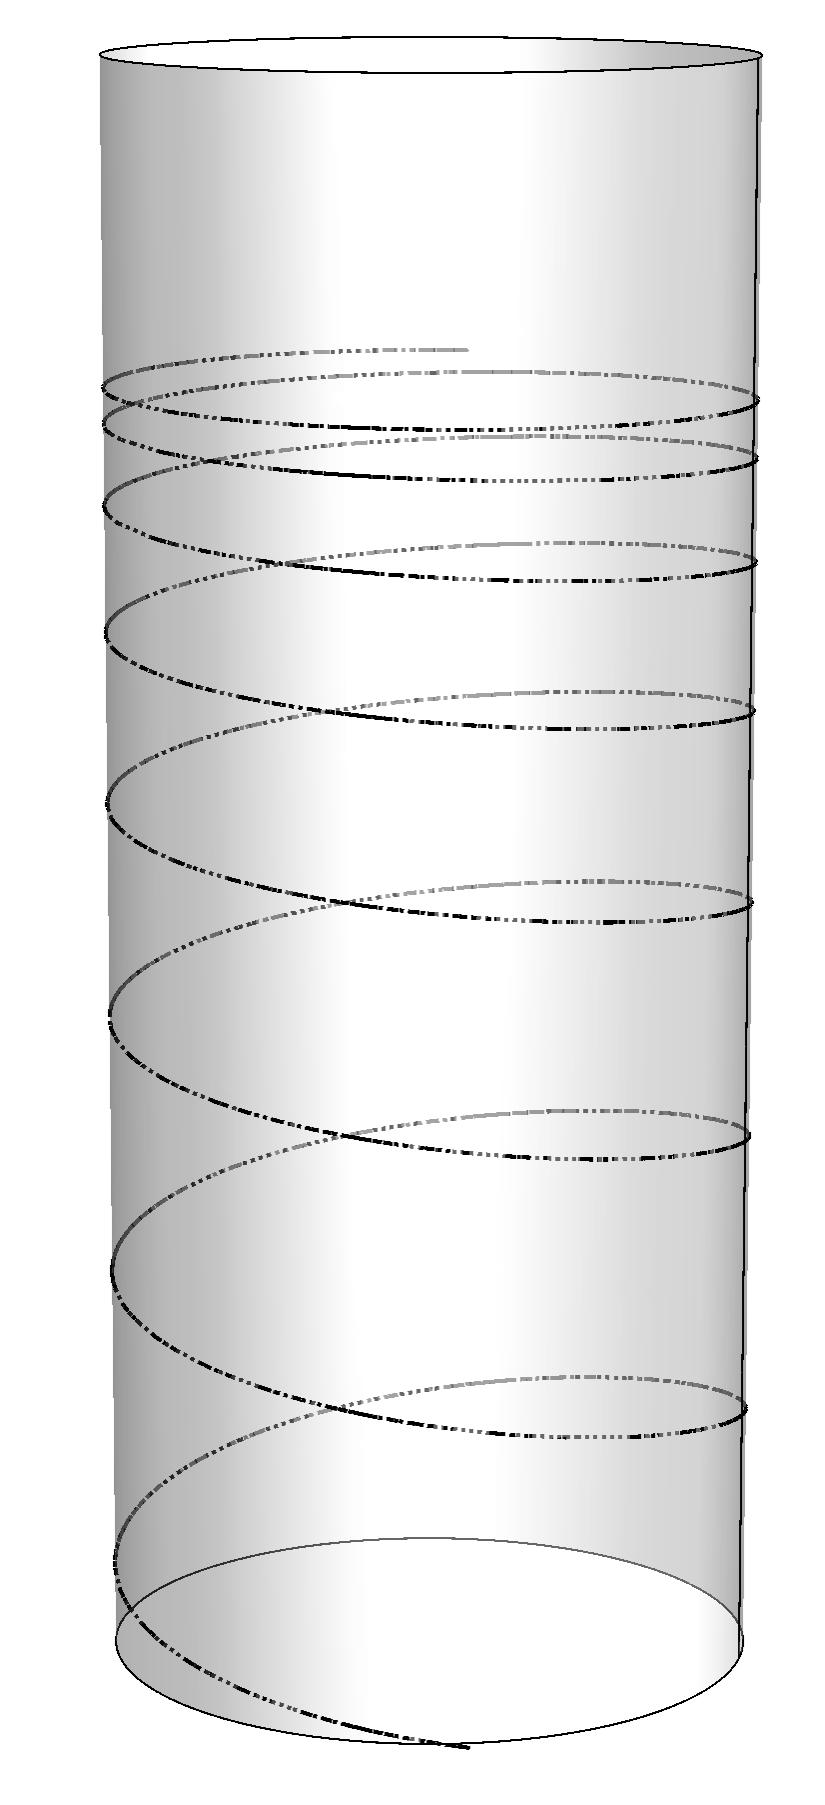 Esercizio 2 Un corpo di massa m, di dimensioni trascurabili, viene tenuto premuto contro una molla disposta orizzontalmente sulla superfice interna di un cilindro cavo di raggio r (vedi figura) ad un